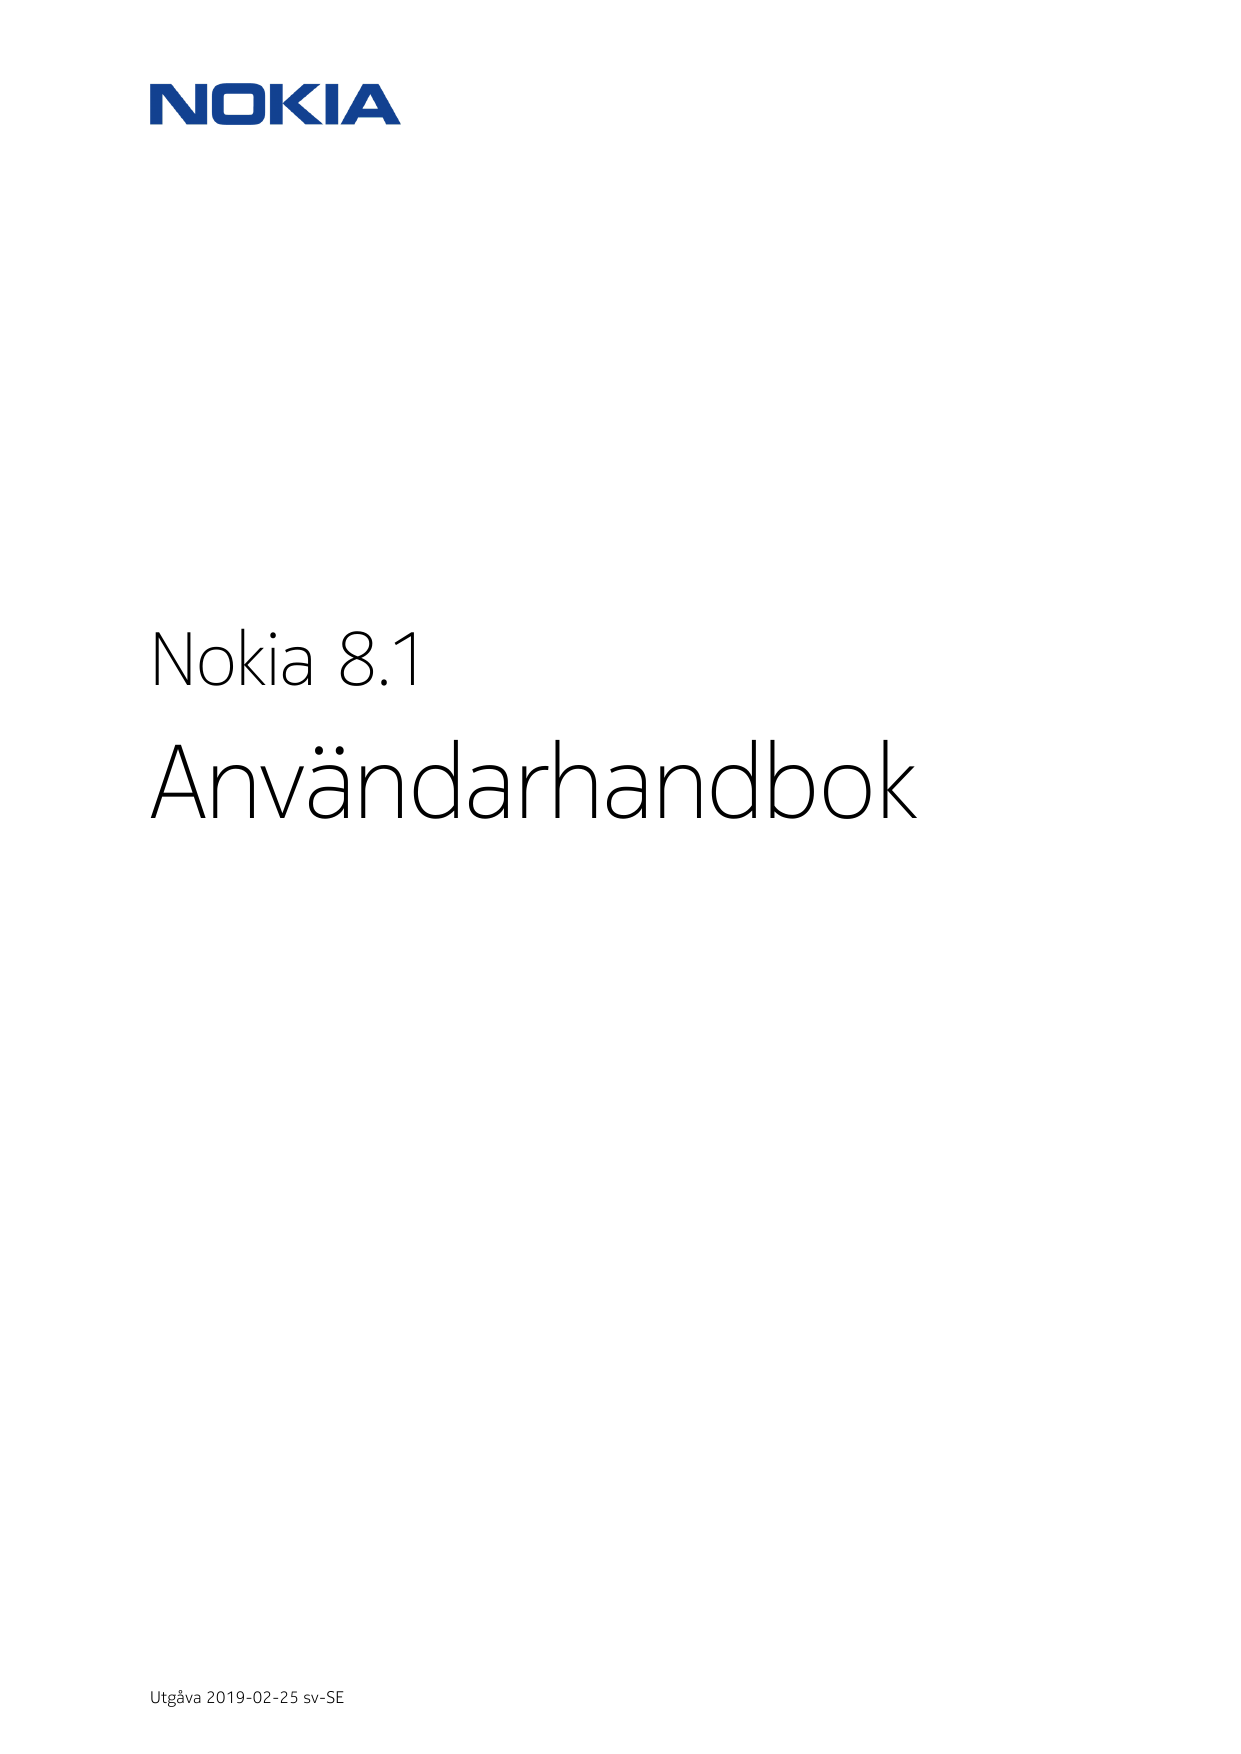 Nokia 8.1AnvändarhandbokUtgåva 2019-02-25 sv-SE